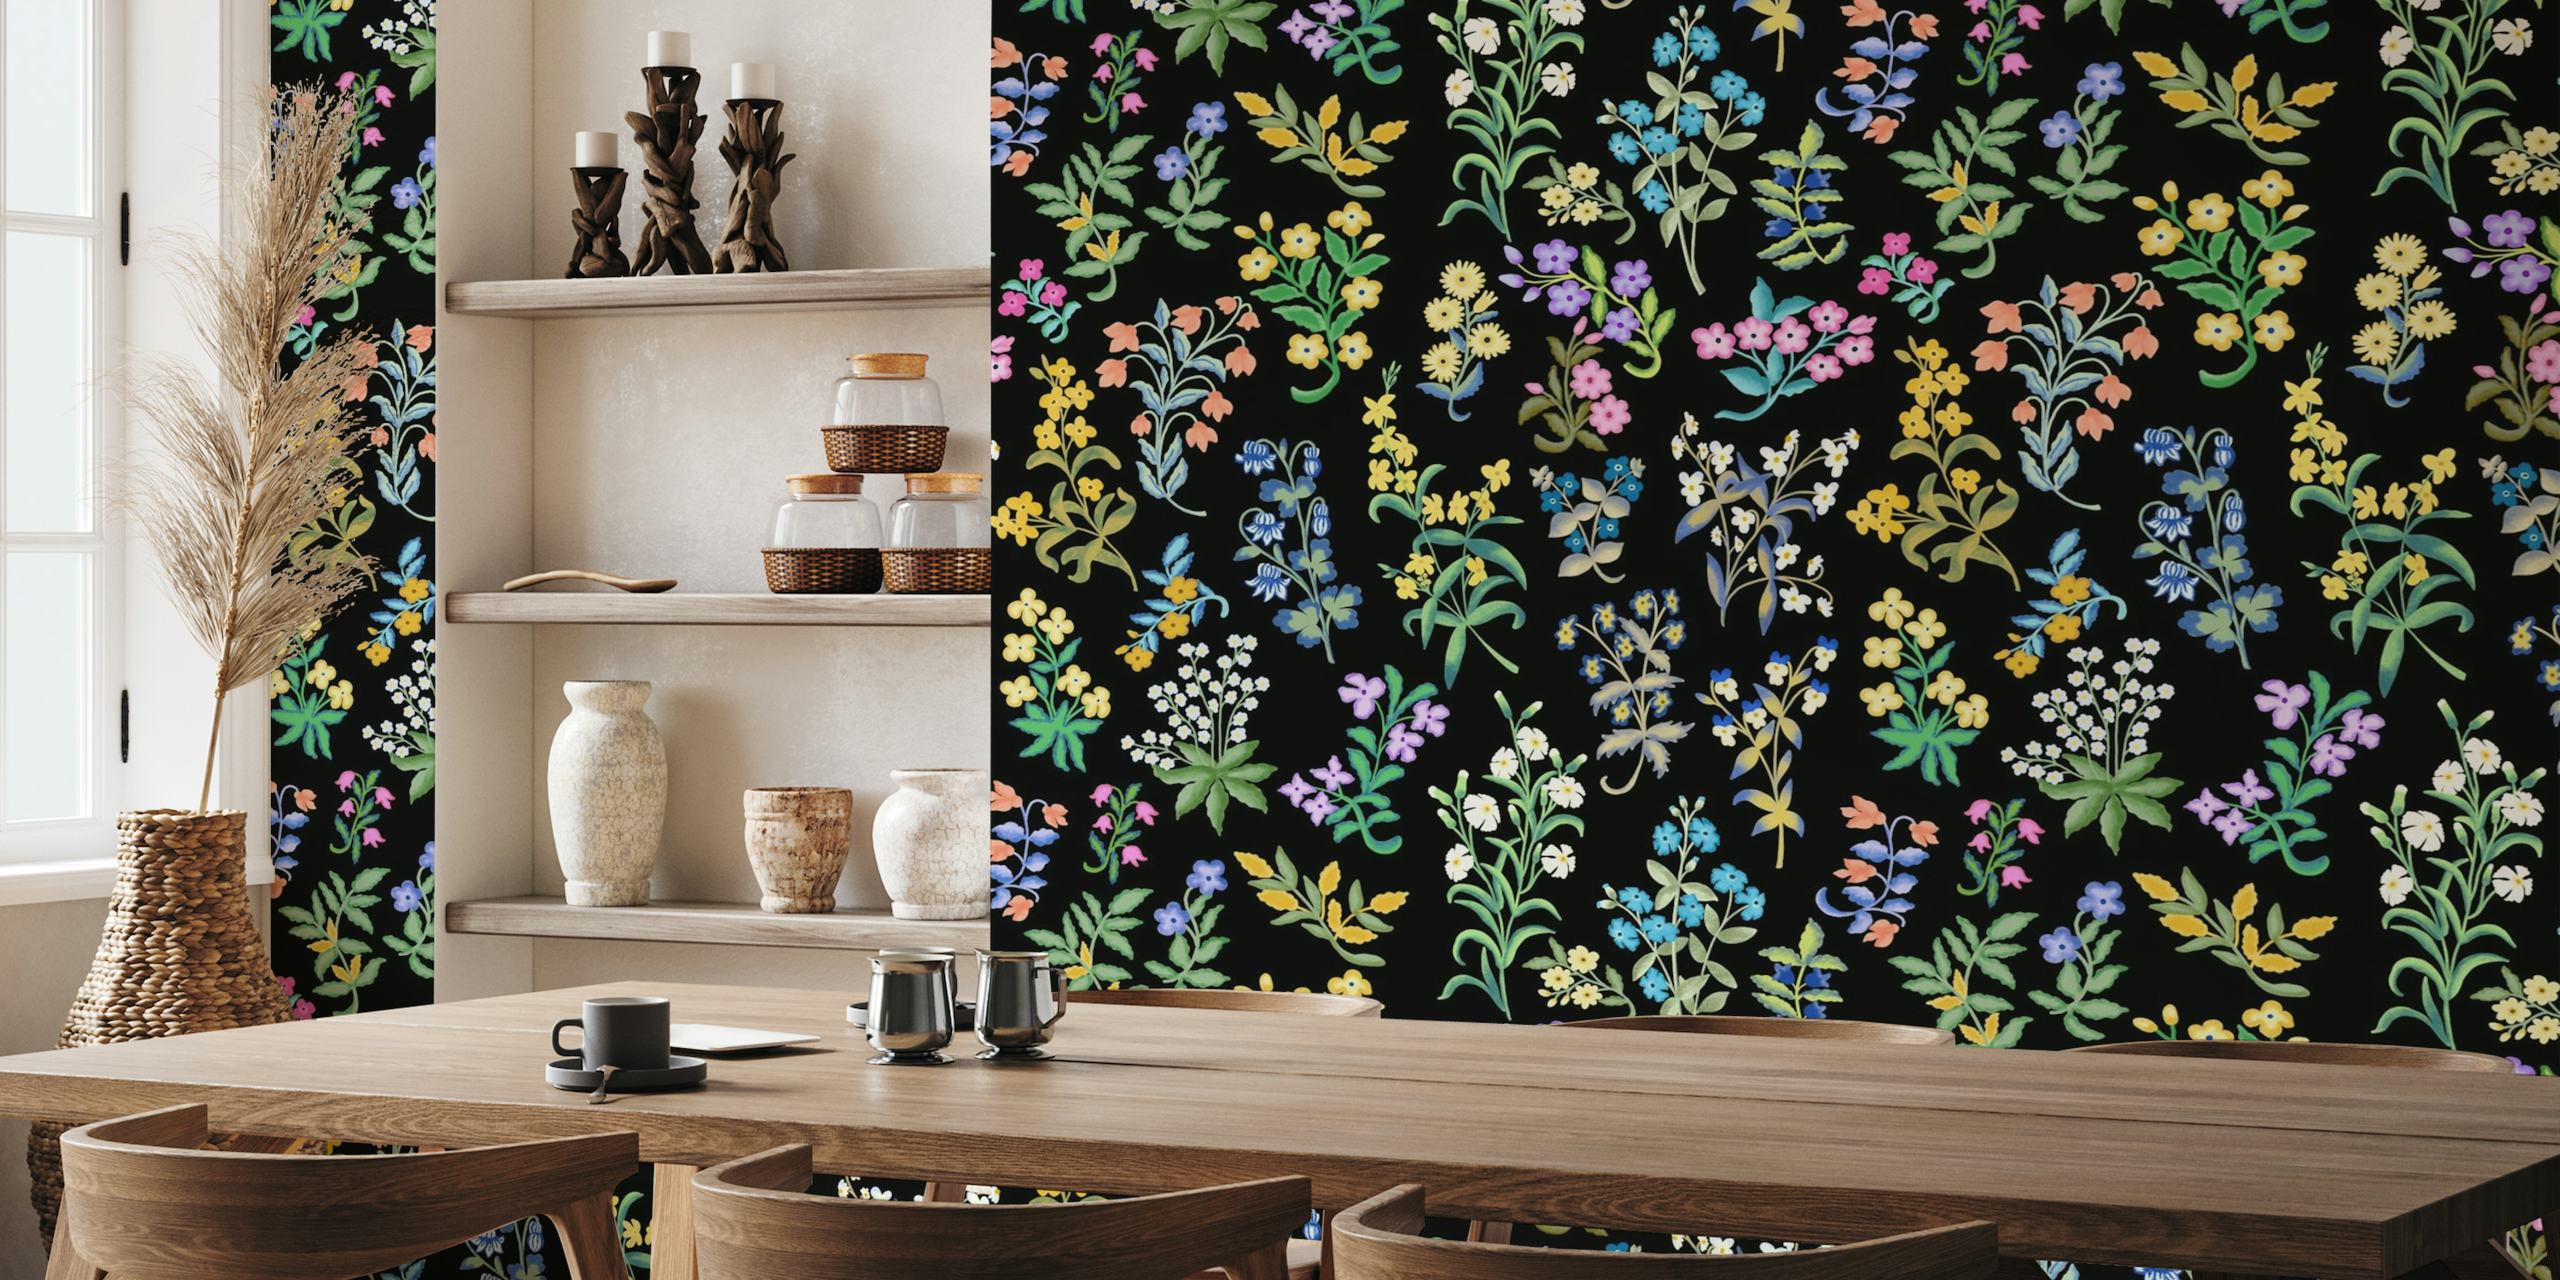 Fototapete mit Millefleurs-Muster und verschiedenen bunten Blumen auf schwarzem Hintergrund